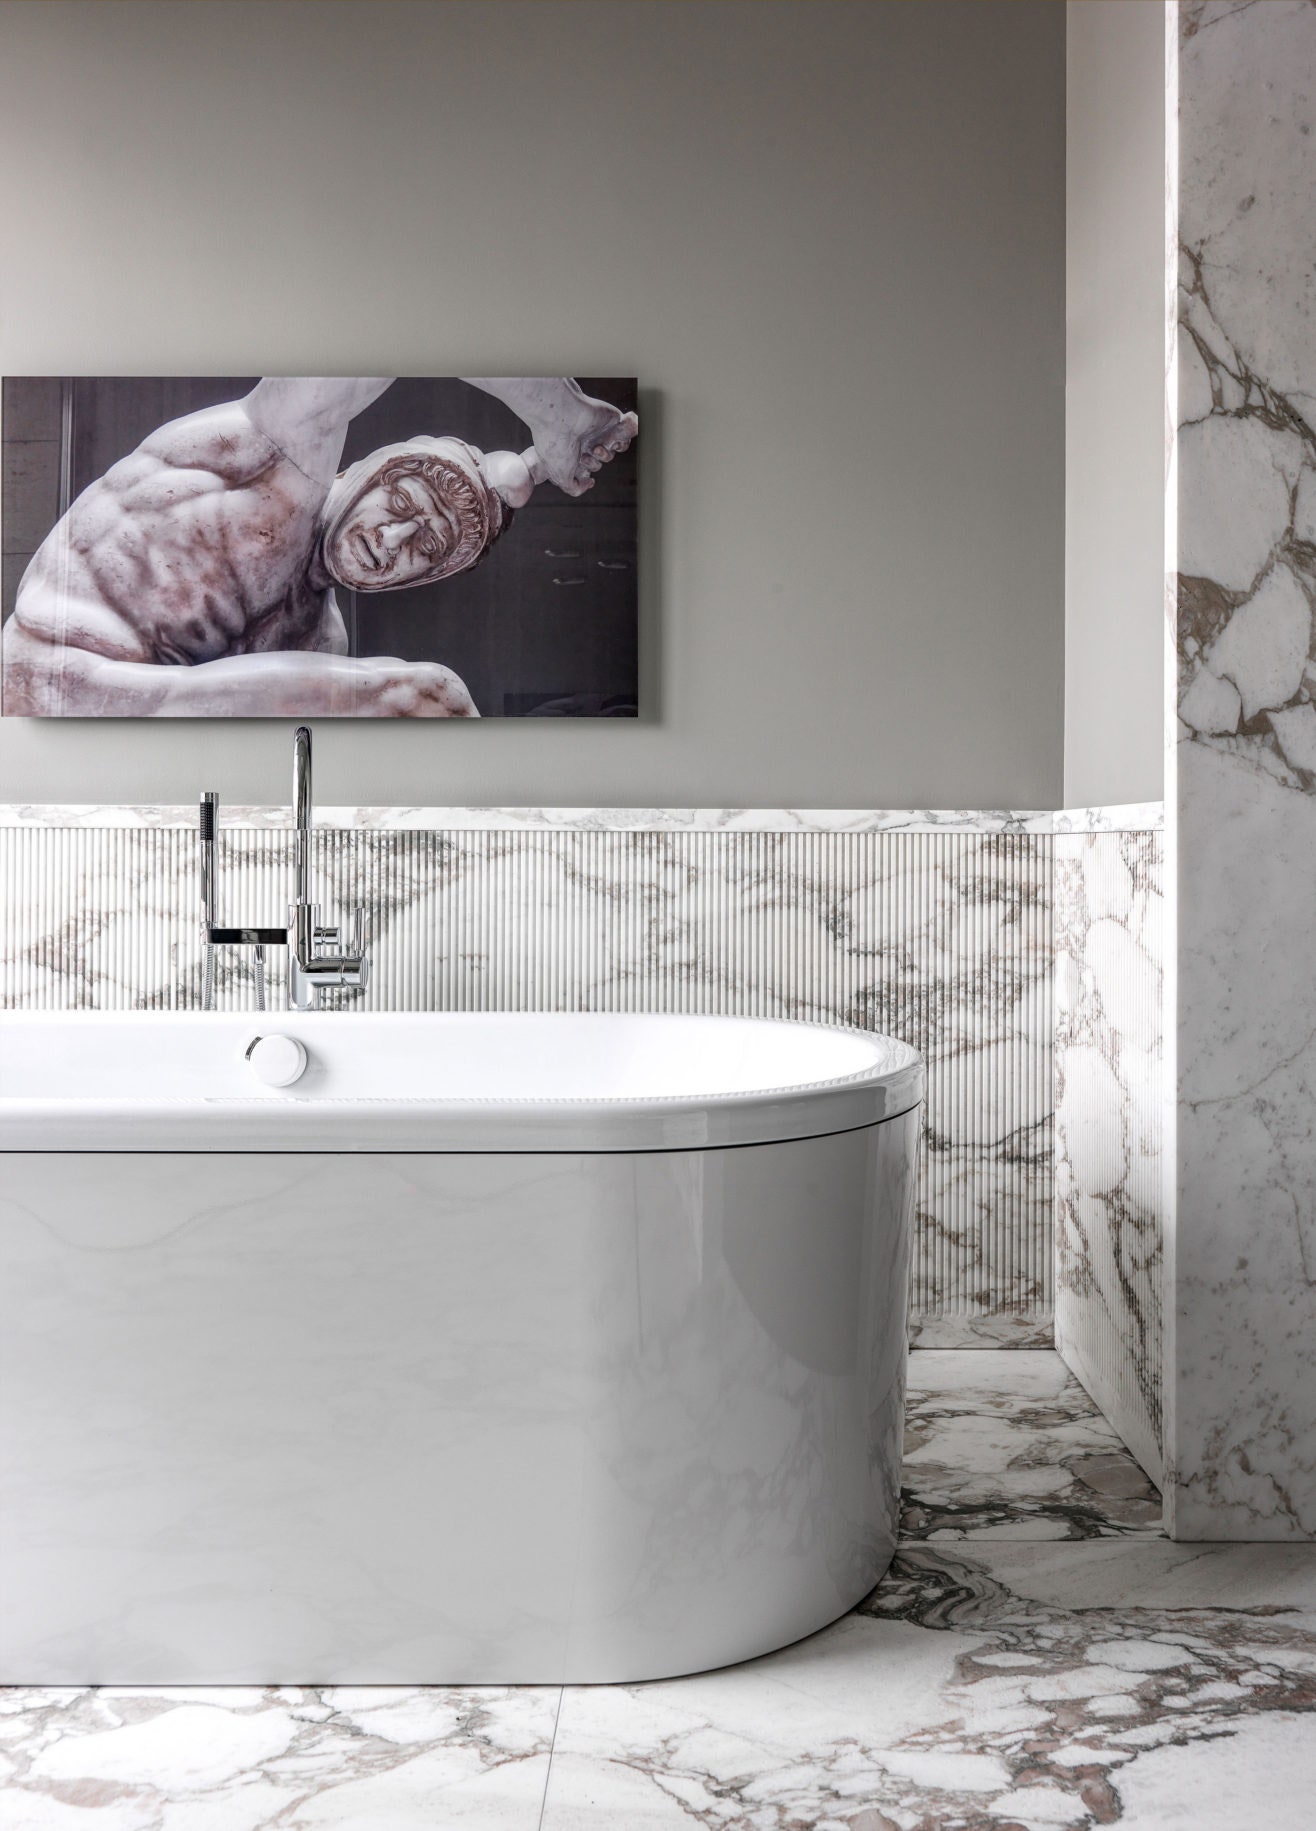 Хозяйская ванная по проекту Ладзаро Рабони. Стены и пол отделаны мрамором.